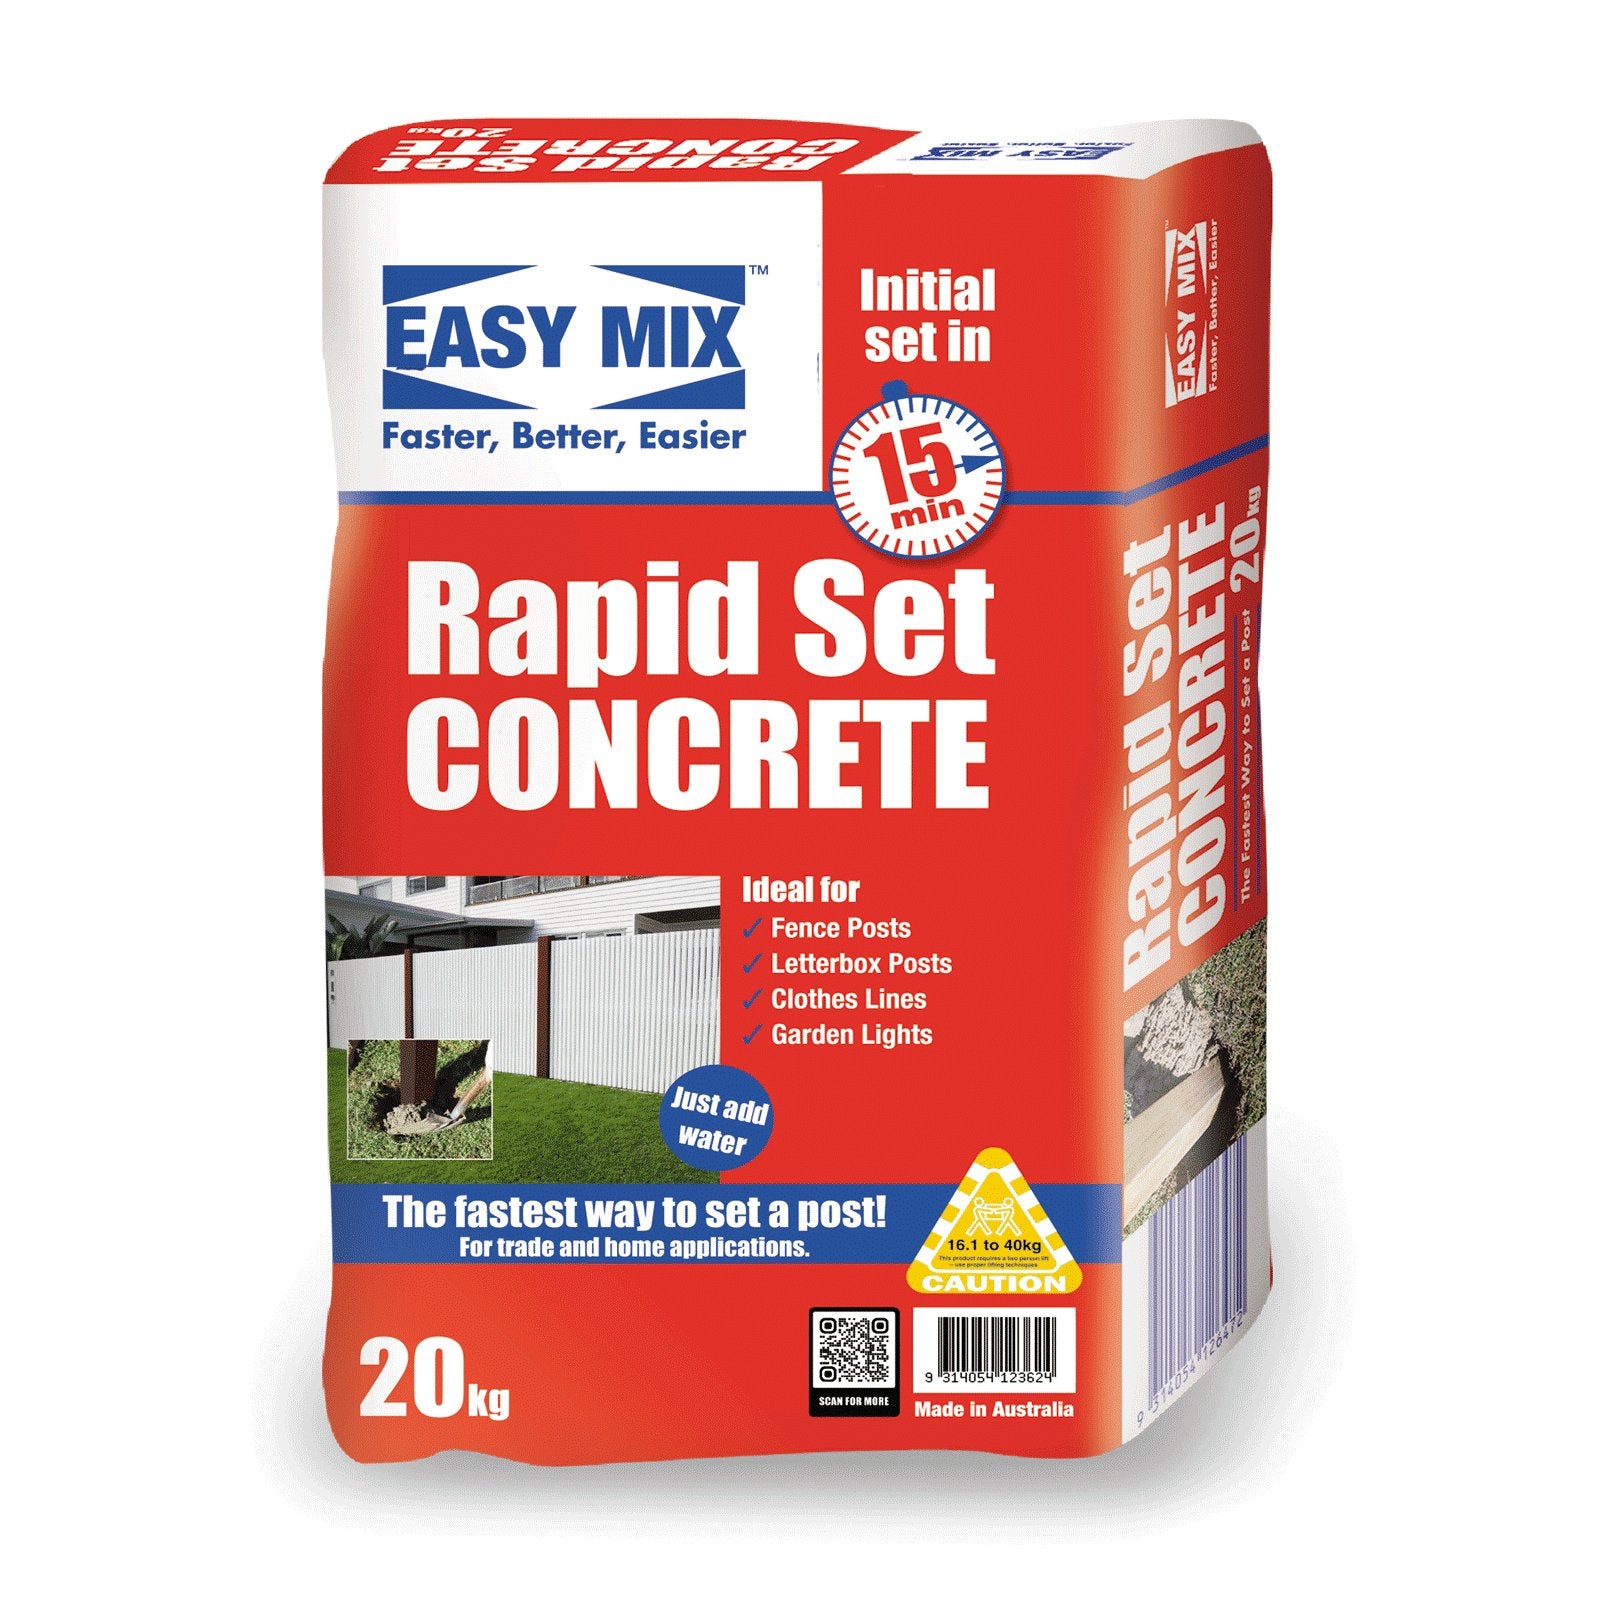 Easy Mix Rapid Set 20 MPA Concrete - 20kg Bag - Surplus Traders Australia Buy Easy Mix Rapid Set 20 MPA Concrete - 20kg Bag for only A$8.10 at Surplus Traders Australia!